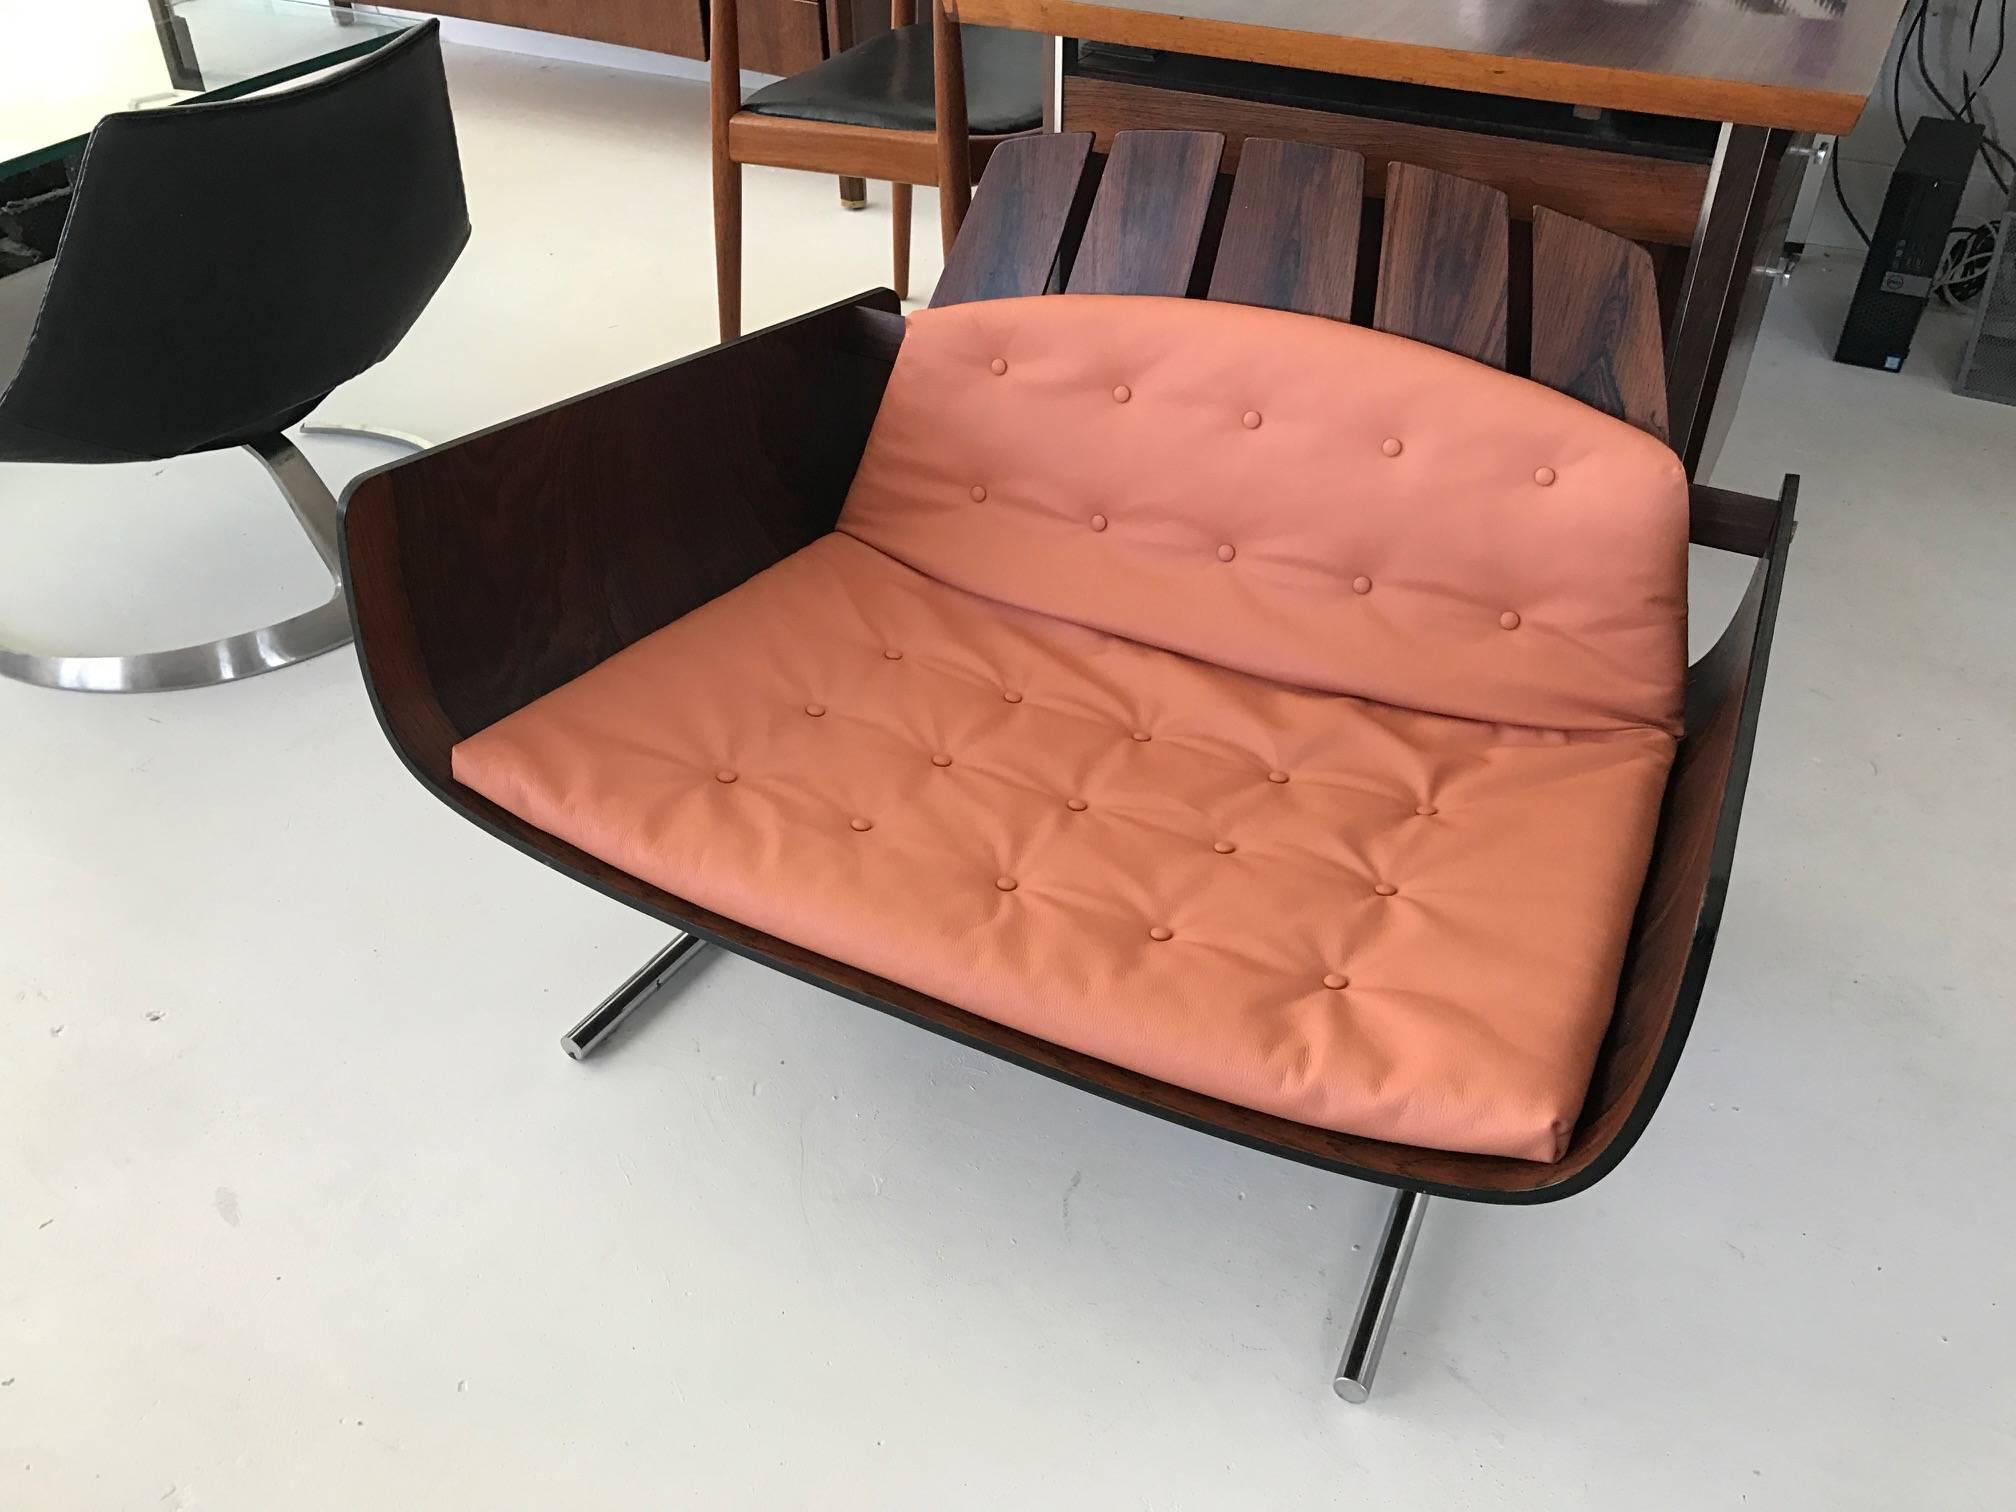 Pièce rare du design moderne brésilien, la chaise longue 